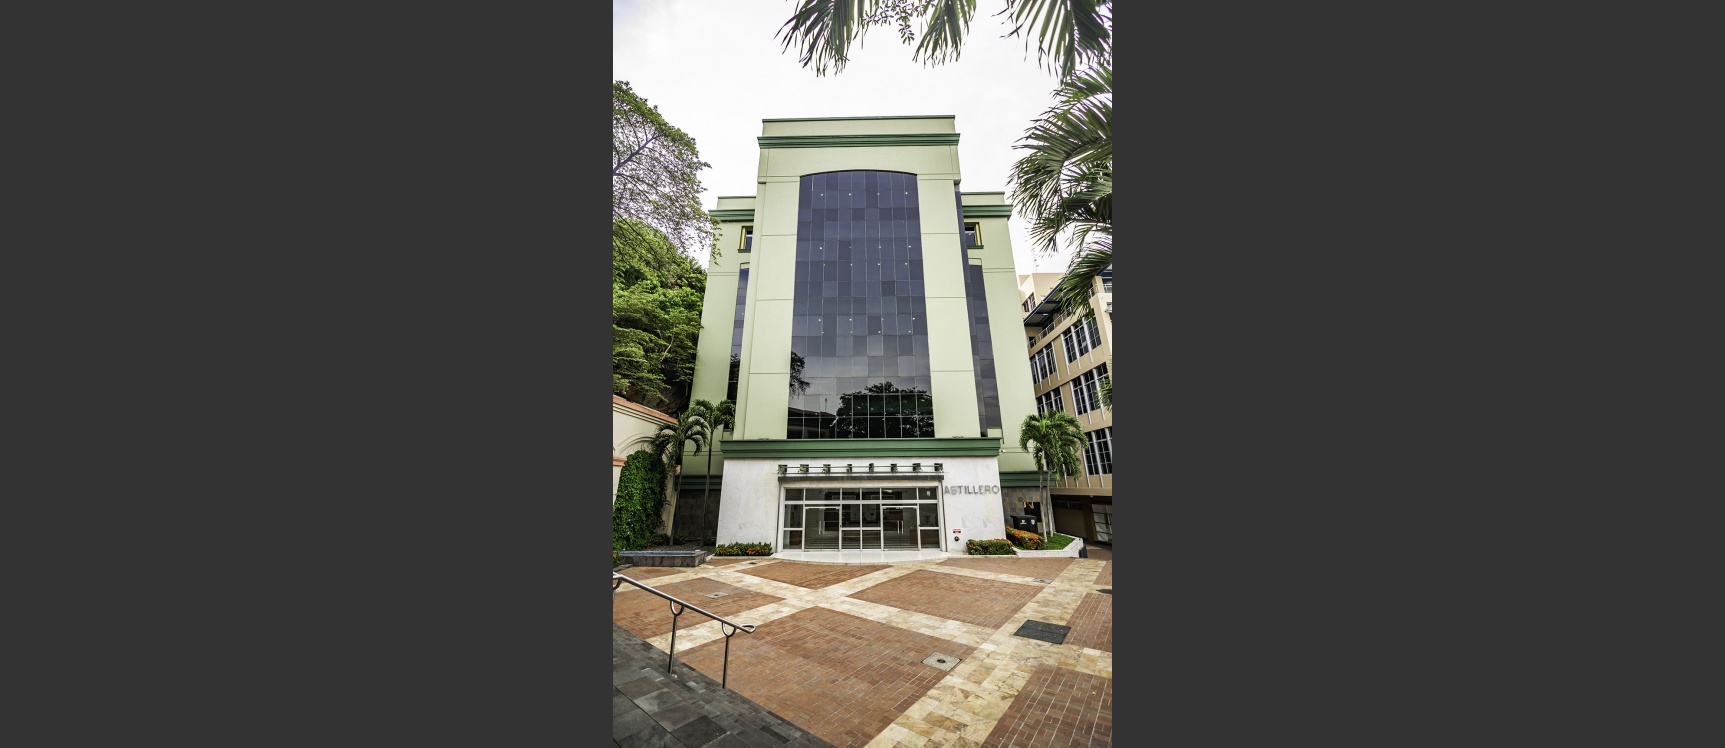 GeoBienes - Oficina en venta en el Edificio El Astillero, Puerto Santa Ana, Centro de Guayaquil - Plusvalia Guayaquil Casas de venta y alquiler Inmobiliaria Ecuador